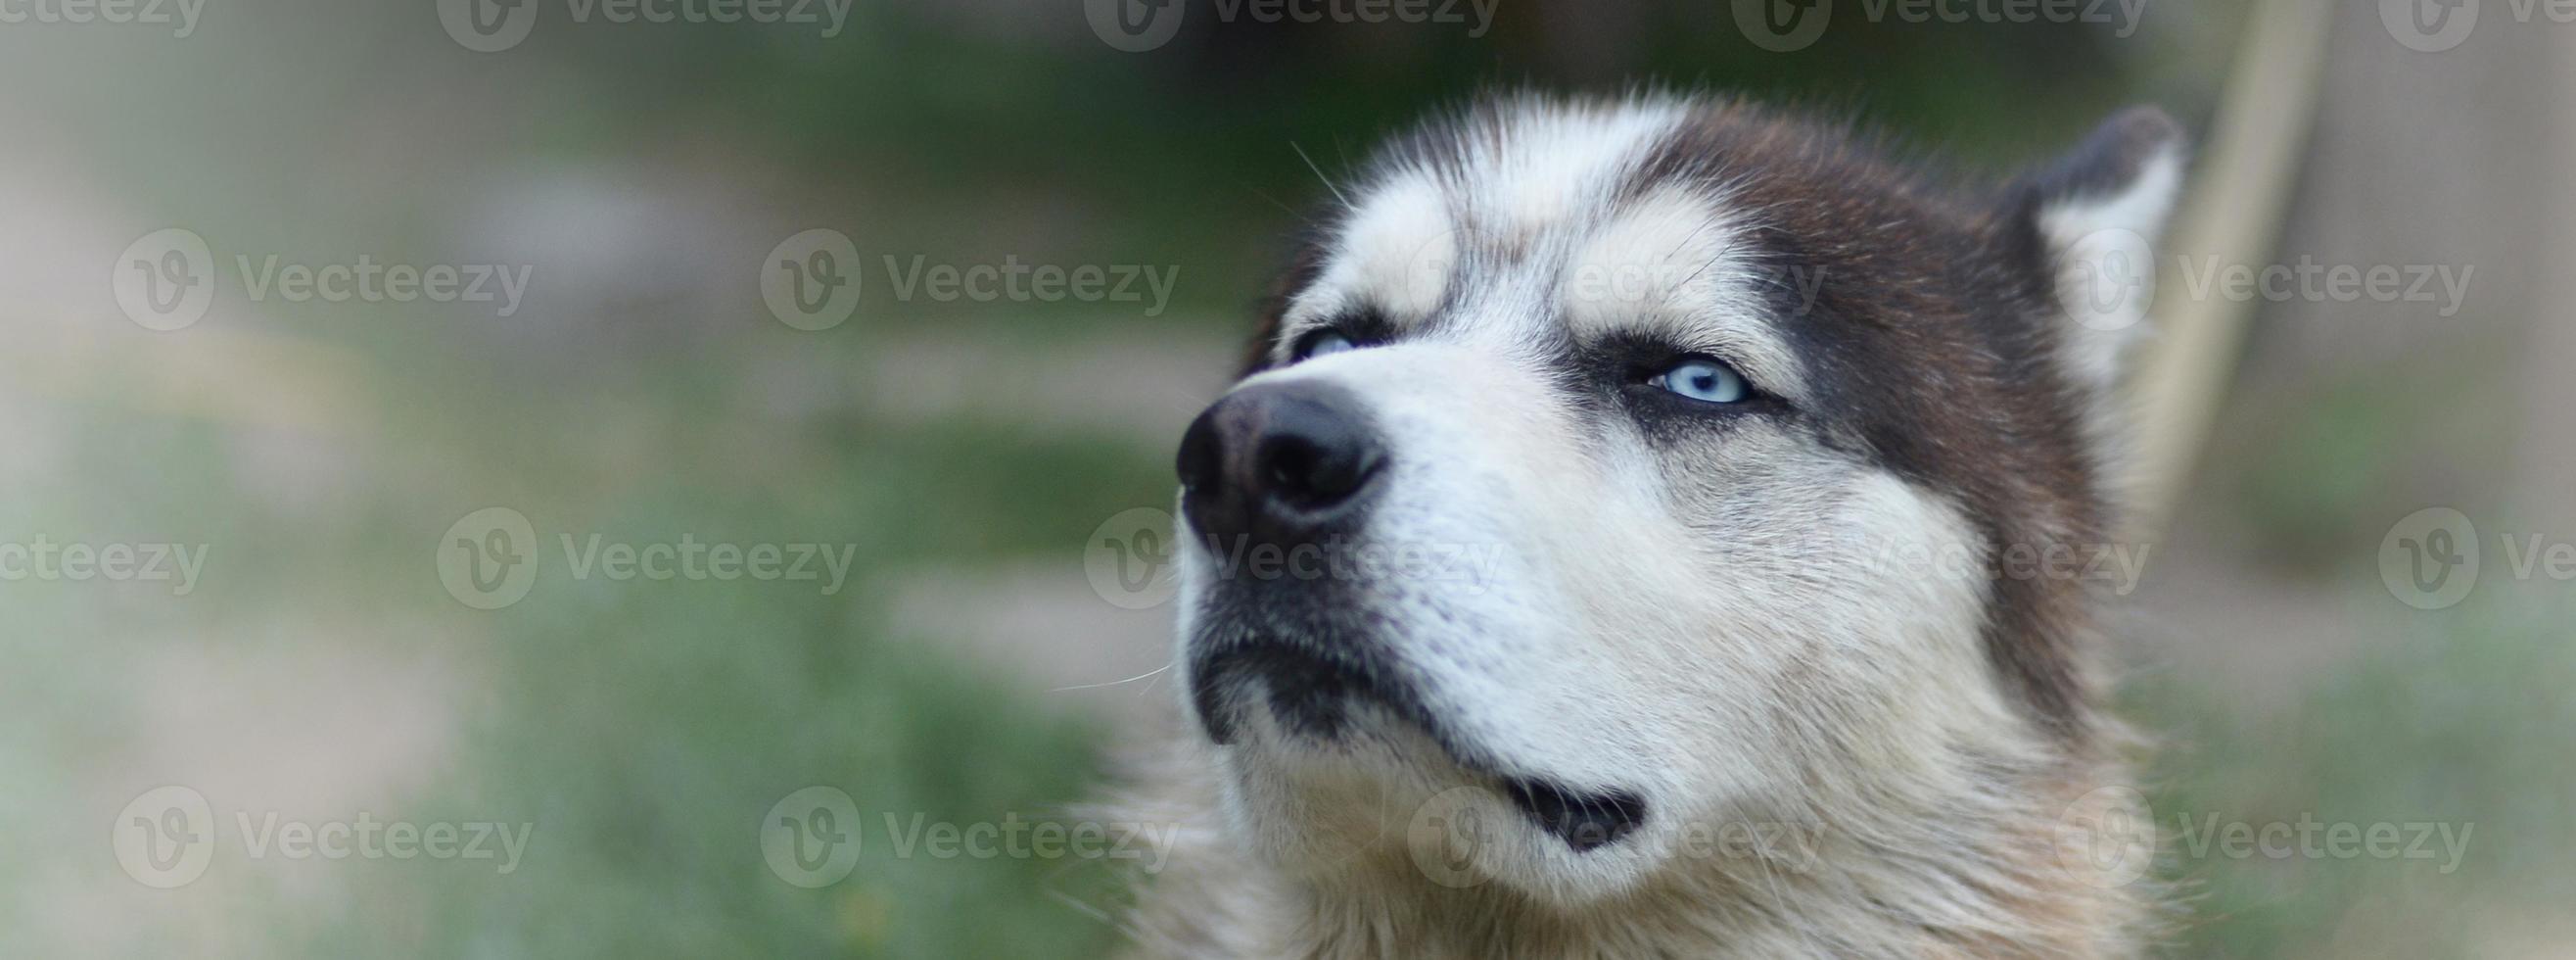 fier beau jeune chien husky avec la tête de profil assis dans le jardin photo